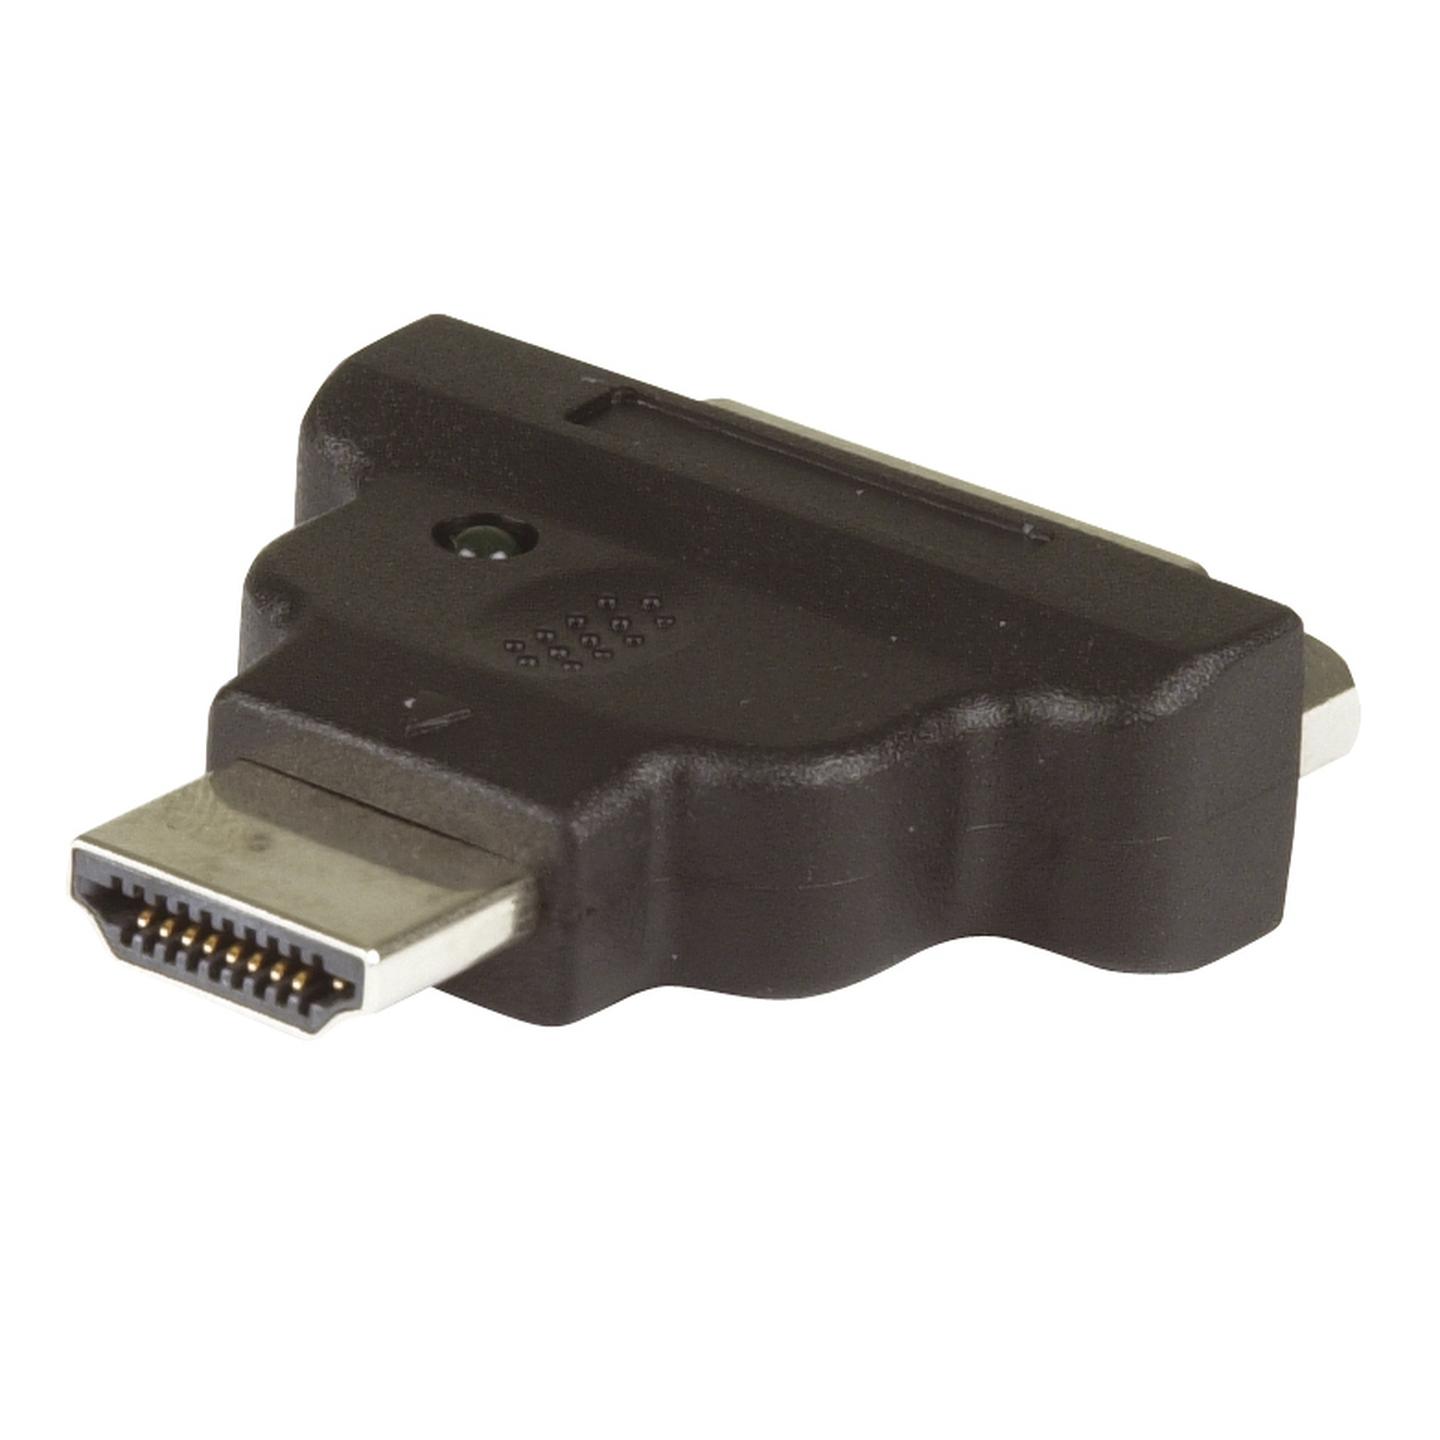 HDMI Plug to DVI-D Socket Adaptor